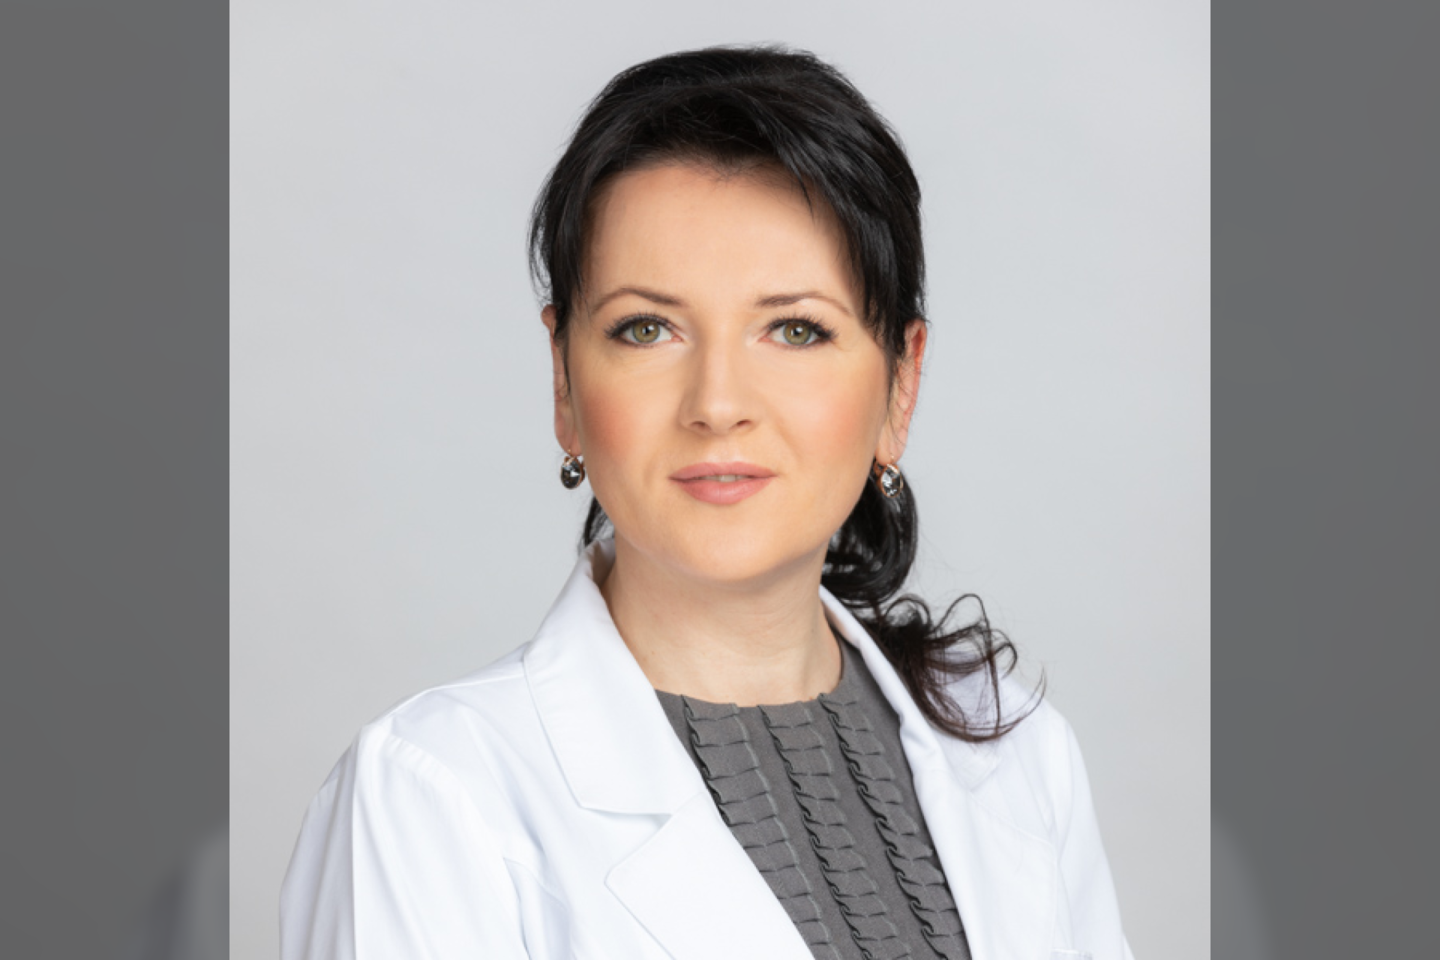 gydytoja anesteziologė reanimatologė Renata Gajauskienė<br>Pranešimo siuntėjų nuotr.